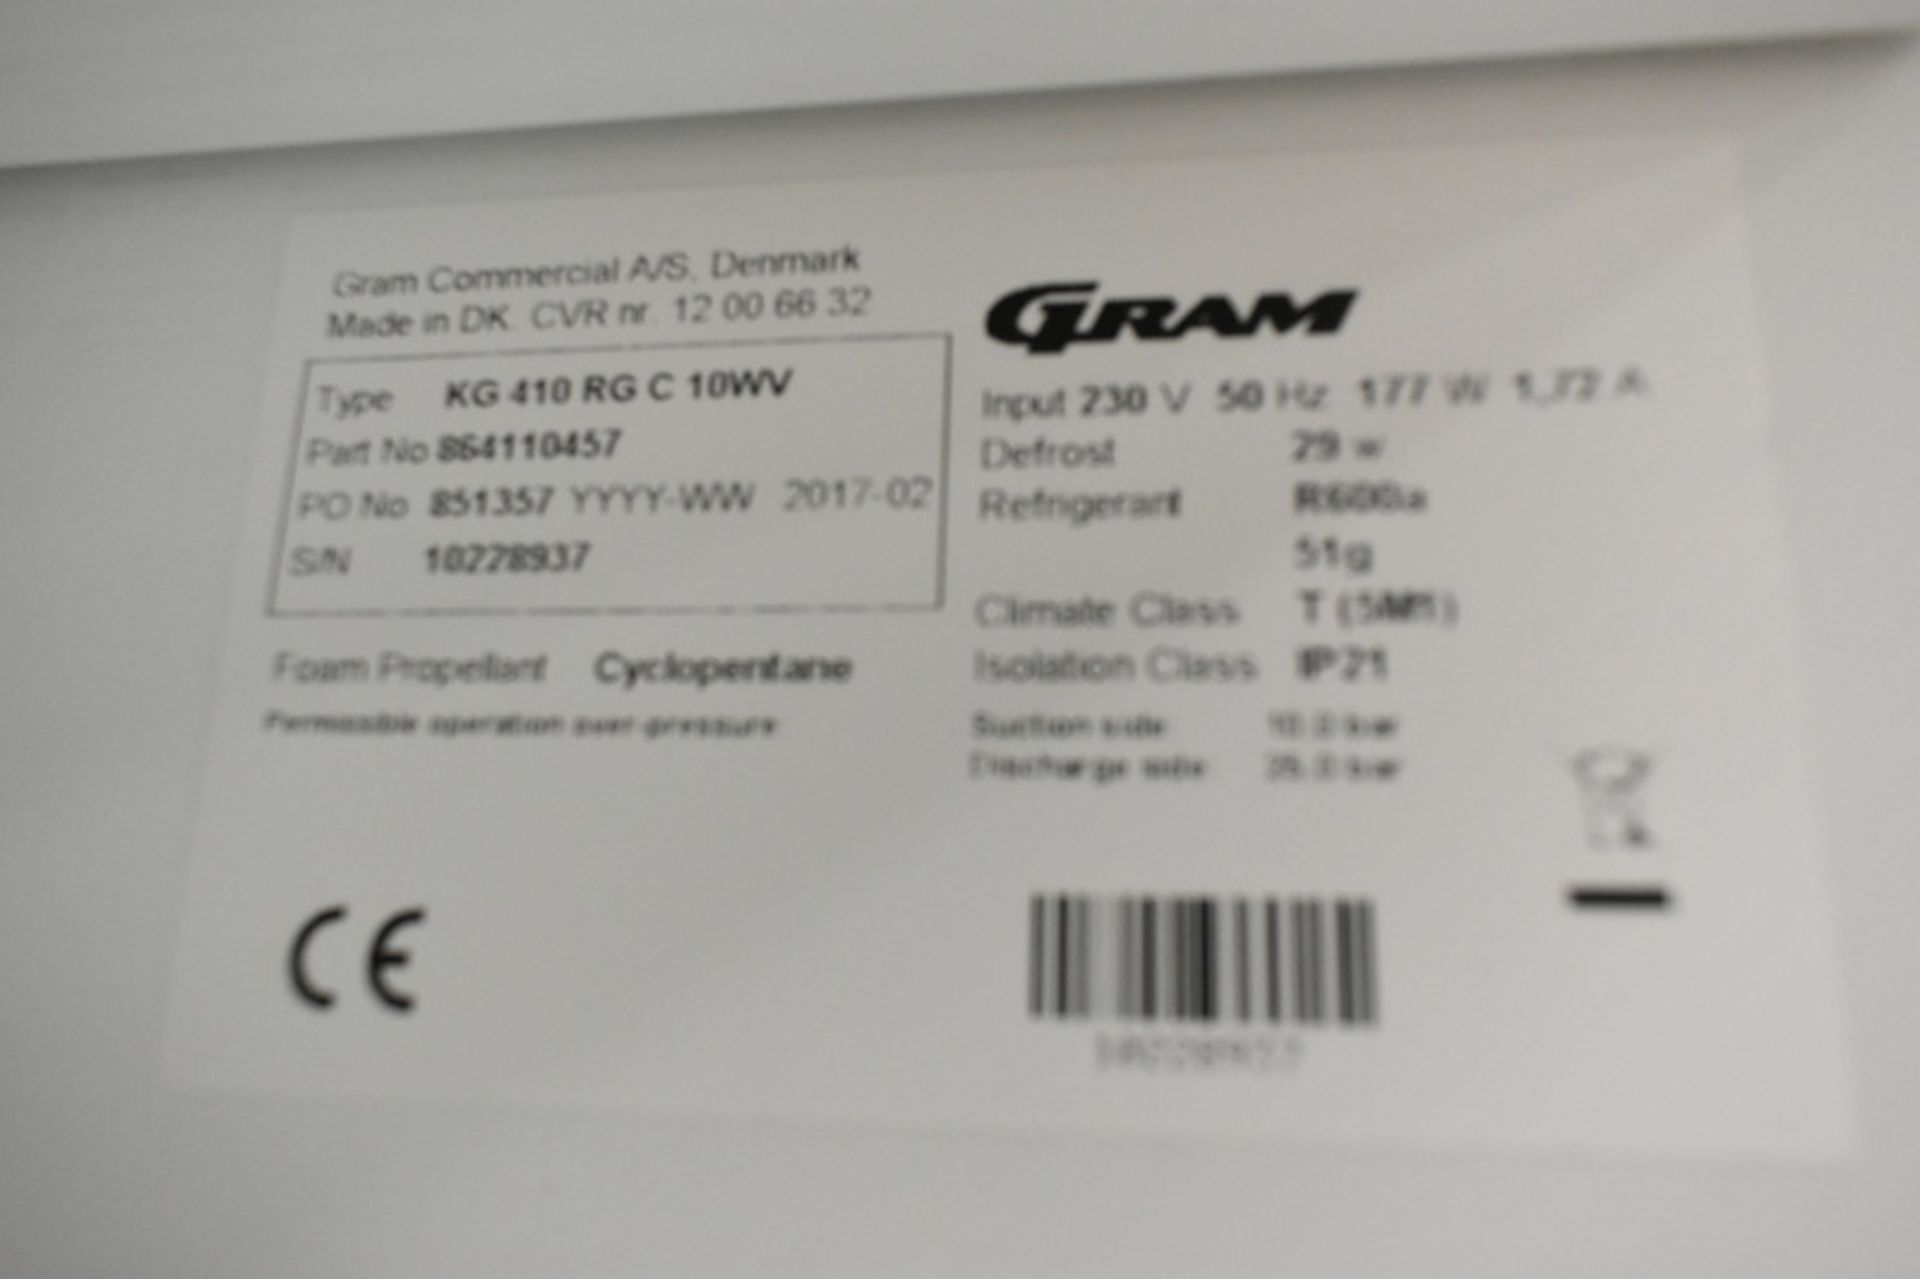 Gram Compact KG 410 RG C 10WV 346Ltr Upright Wine Cooler/Fridge - Image 4 of 9